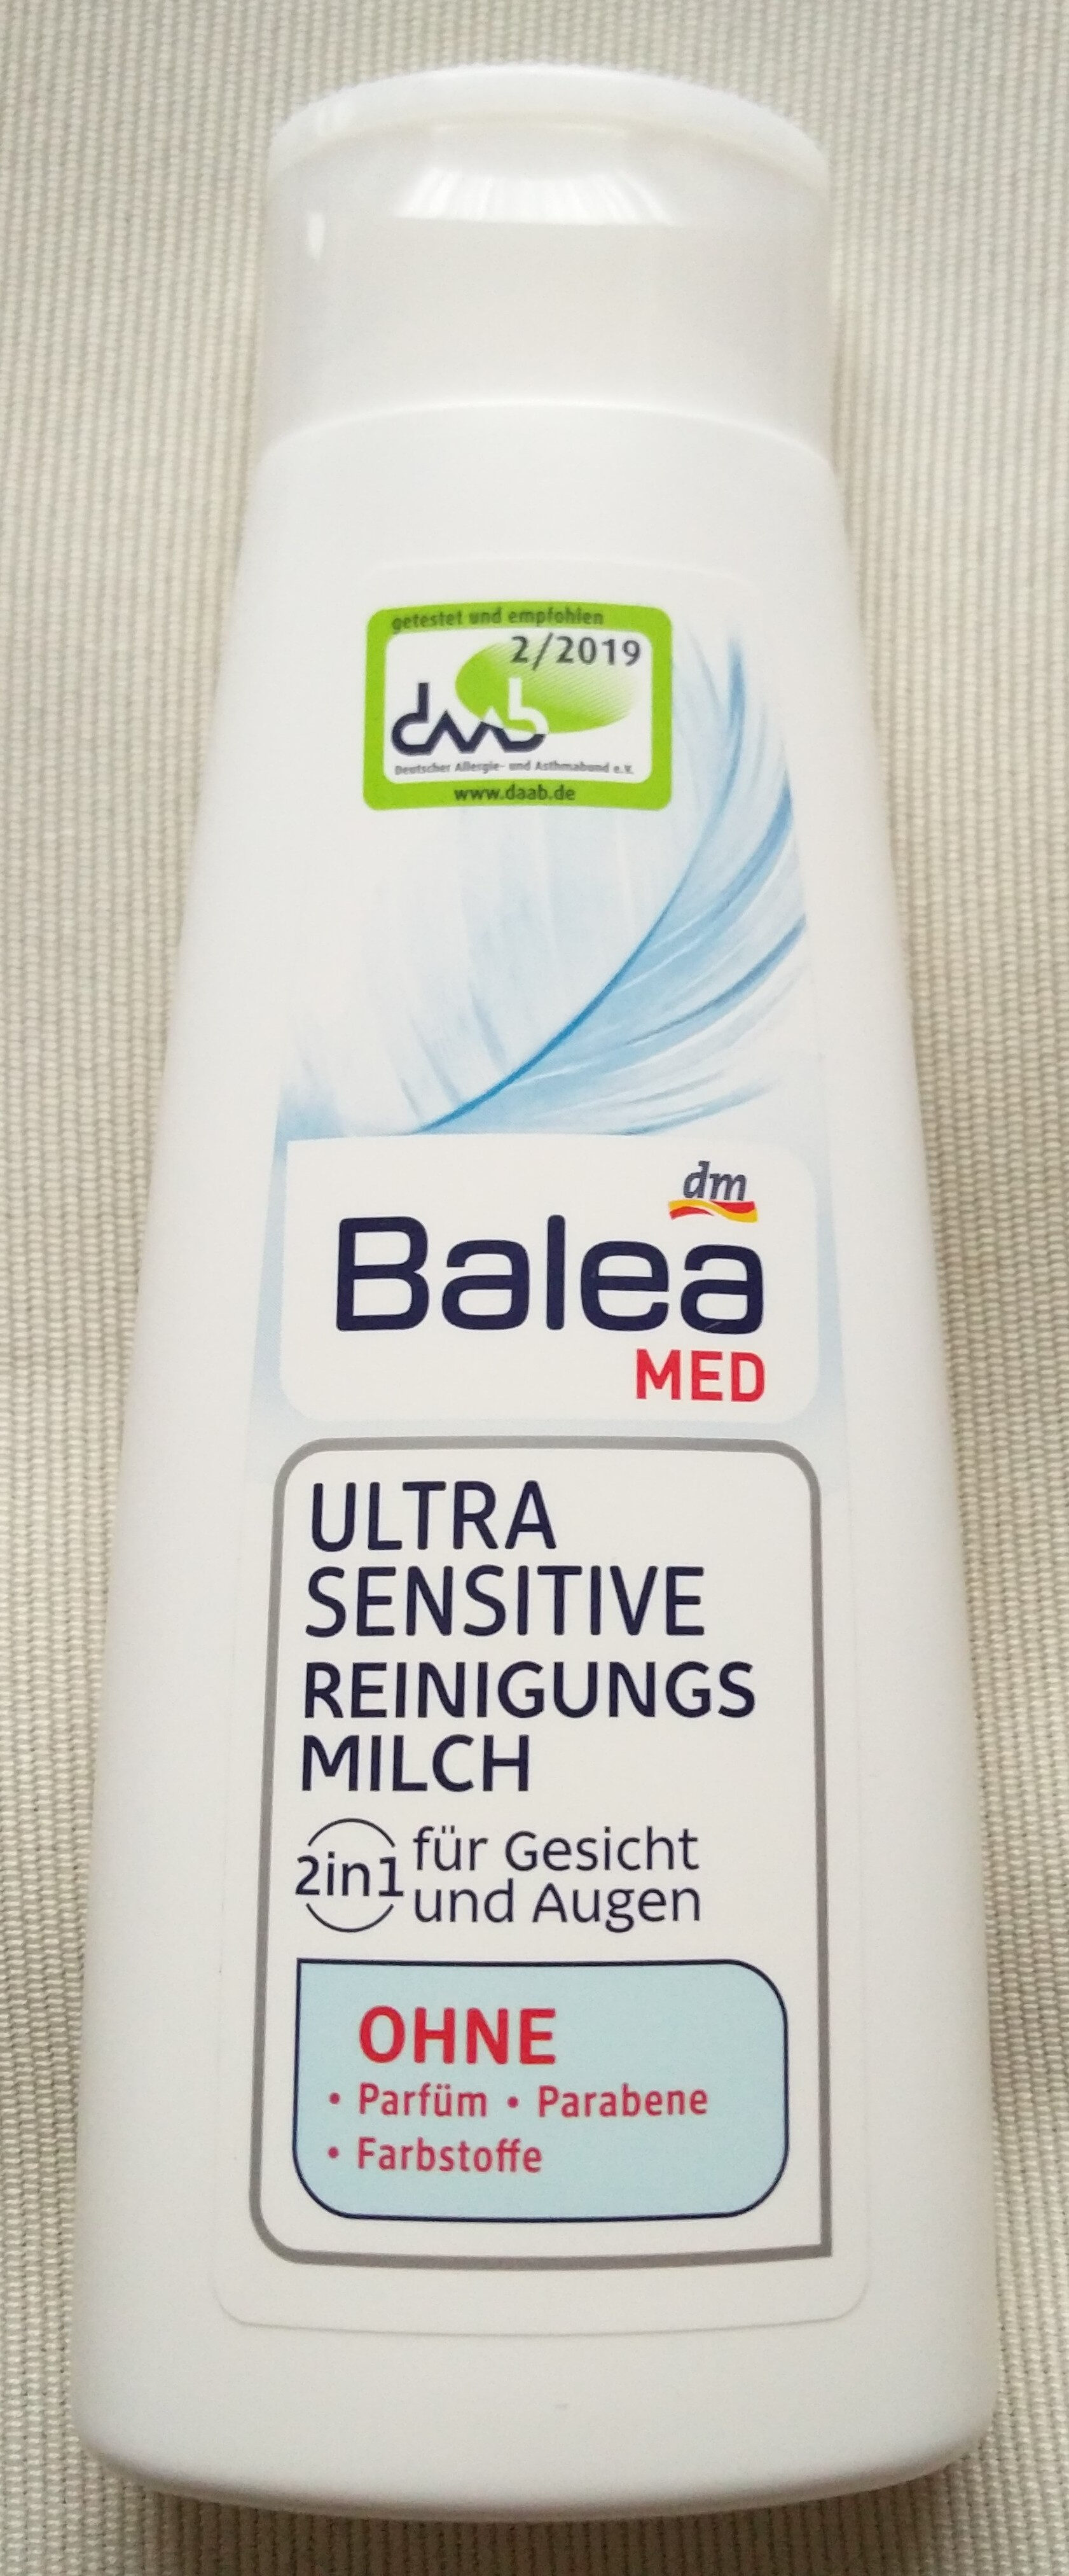 Ultra Sensitive Reinigungsmilch (2 in 1, für Gesicht und Augen) - Produit - de